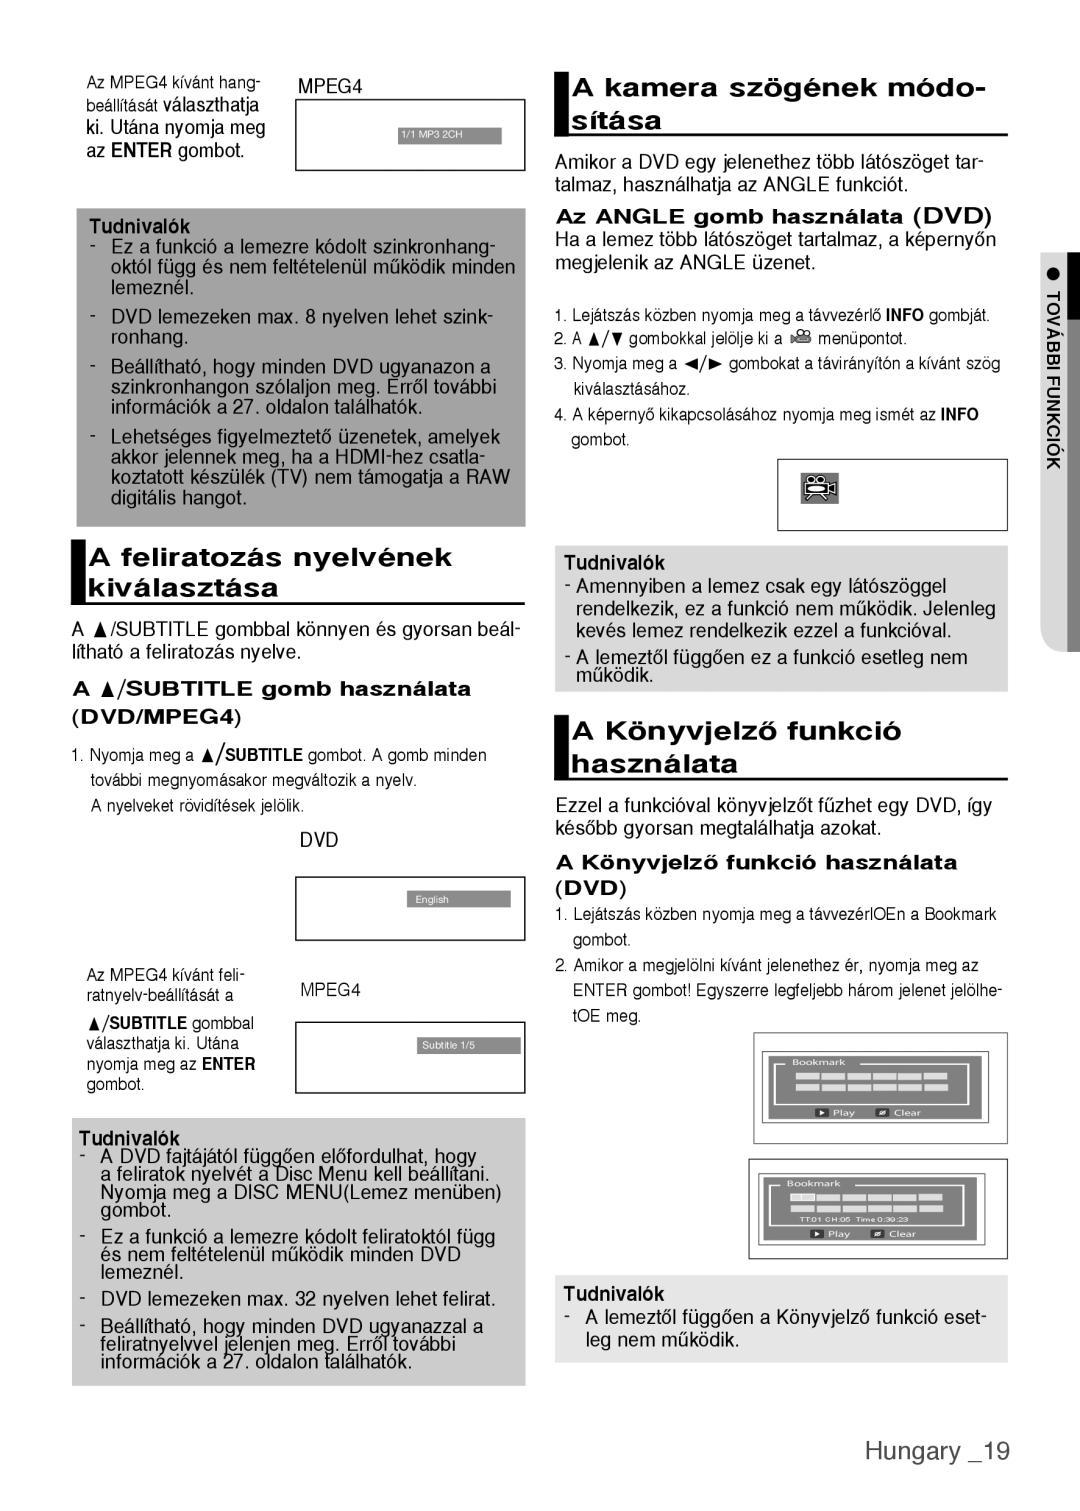 Samsung DVD-H1080W/XEE manual A kamera szögének módo- sítása, A feliratozás nyelvének kiválasztása, Hungary, Tudnivalók 